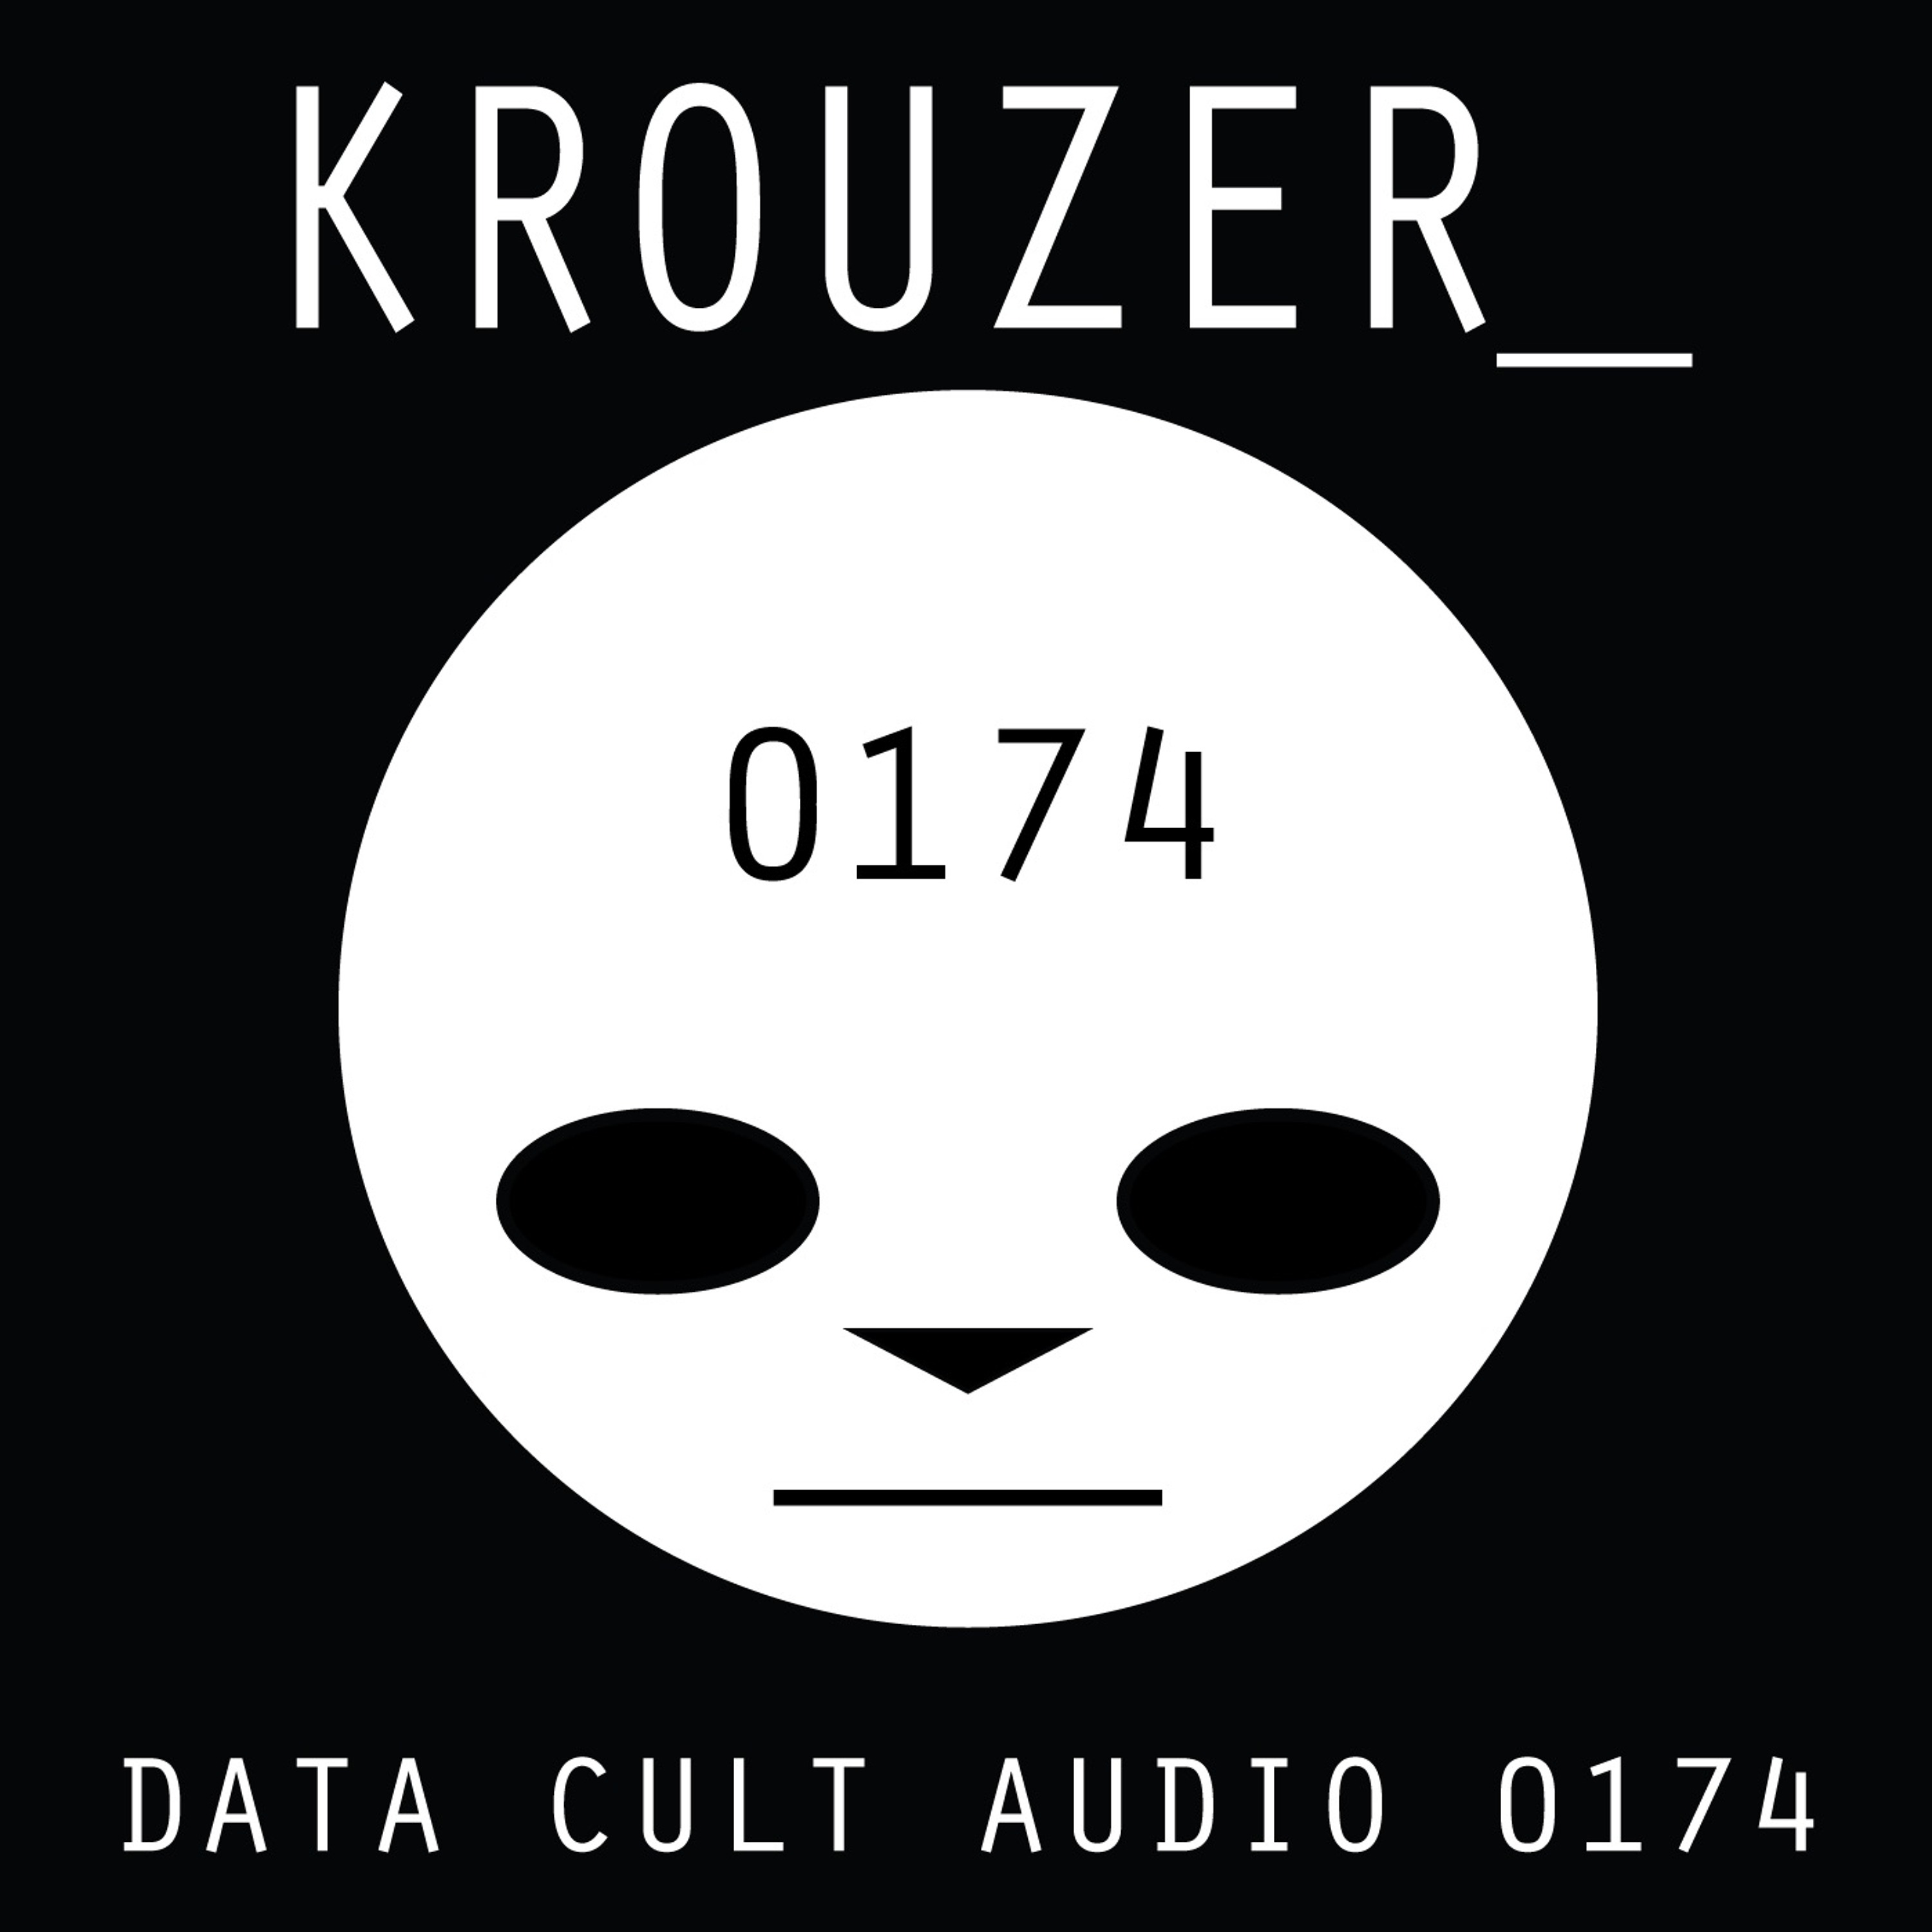 Data Cult Audio 0174 - Krouzer